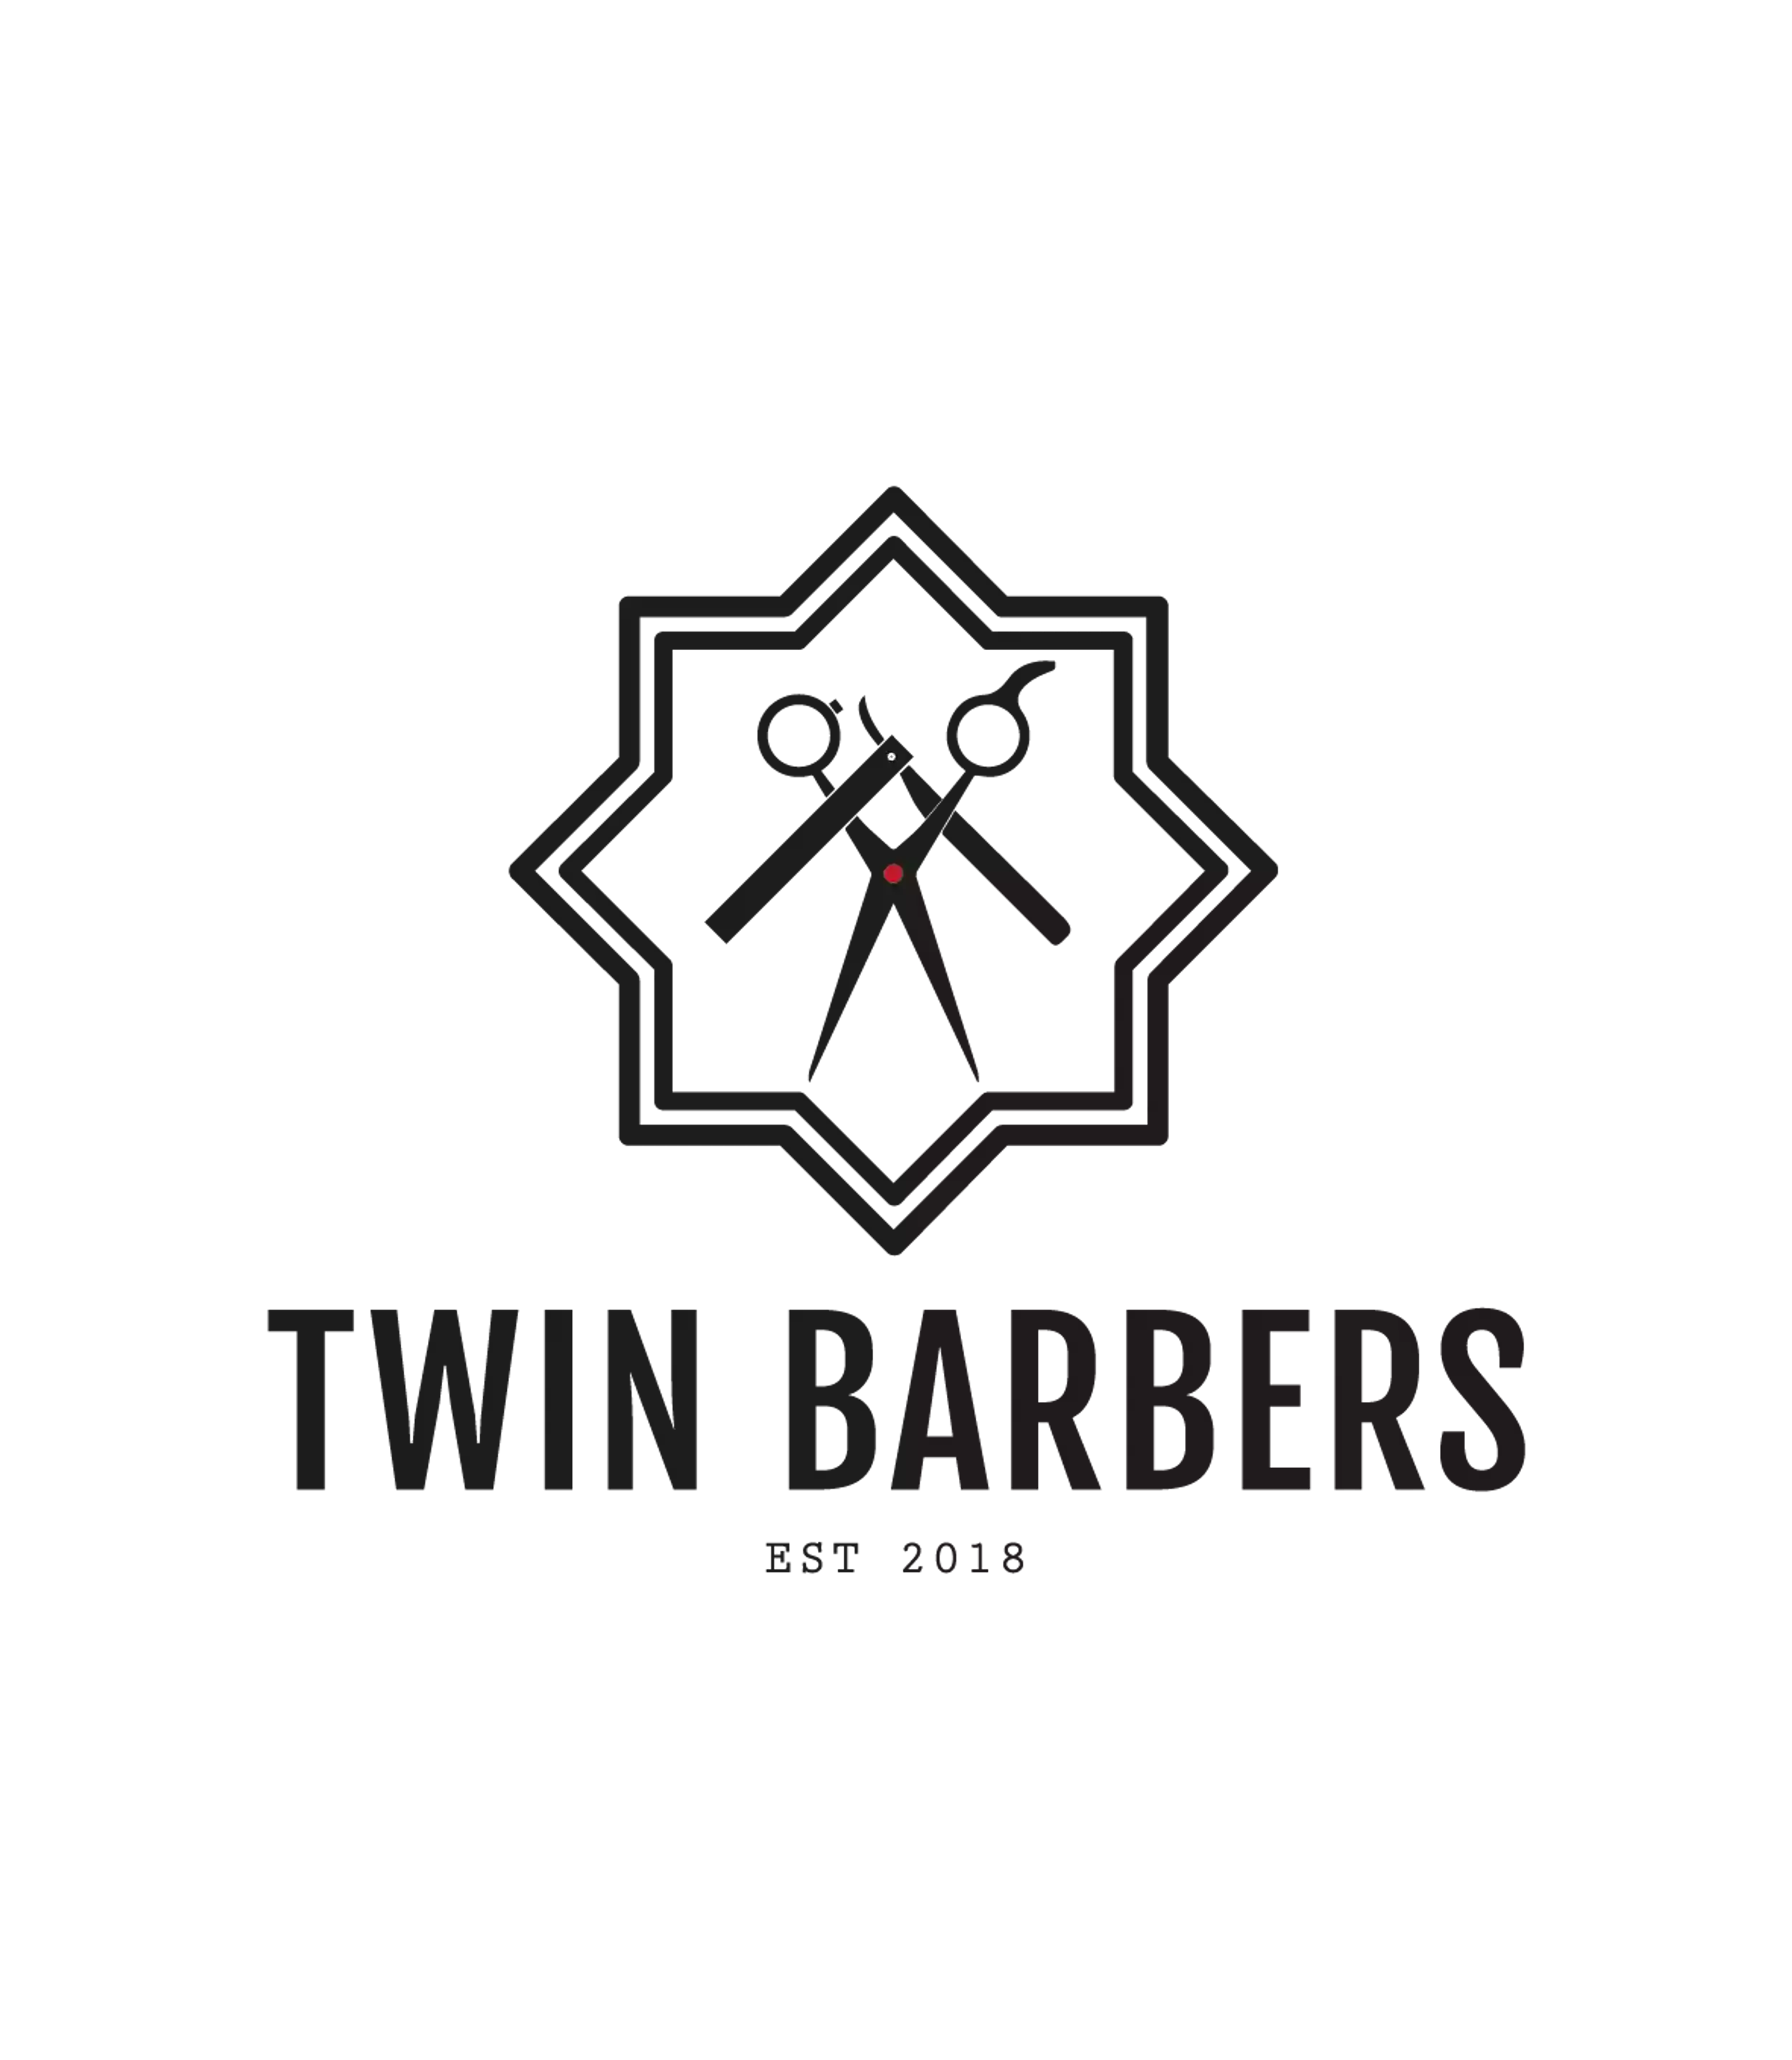 Twin Barbers